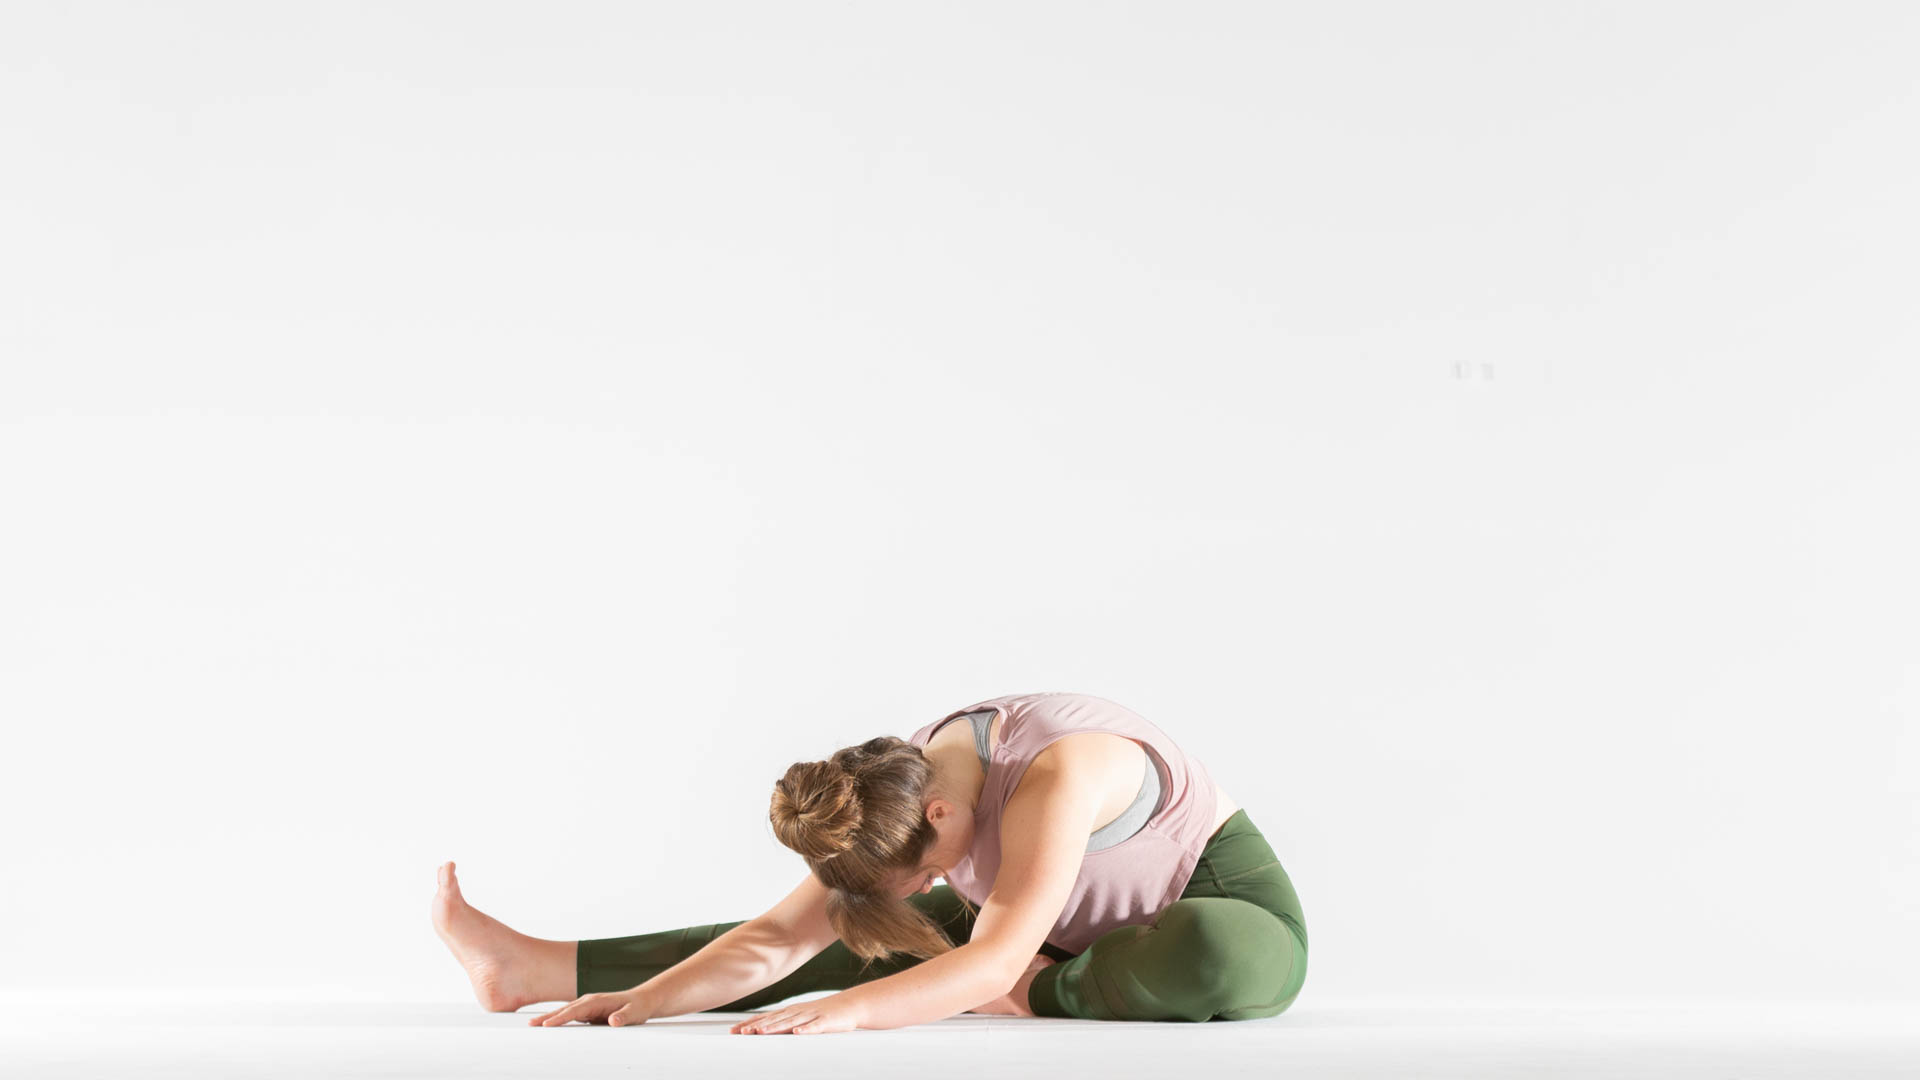 Yin Yoga Asanas, Yoga Poses, Yoga Lover - FridayStuff